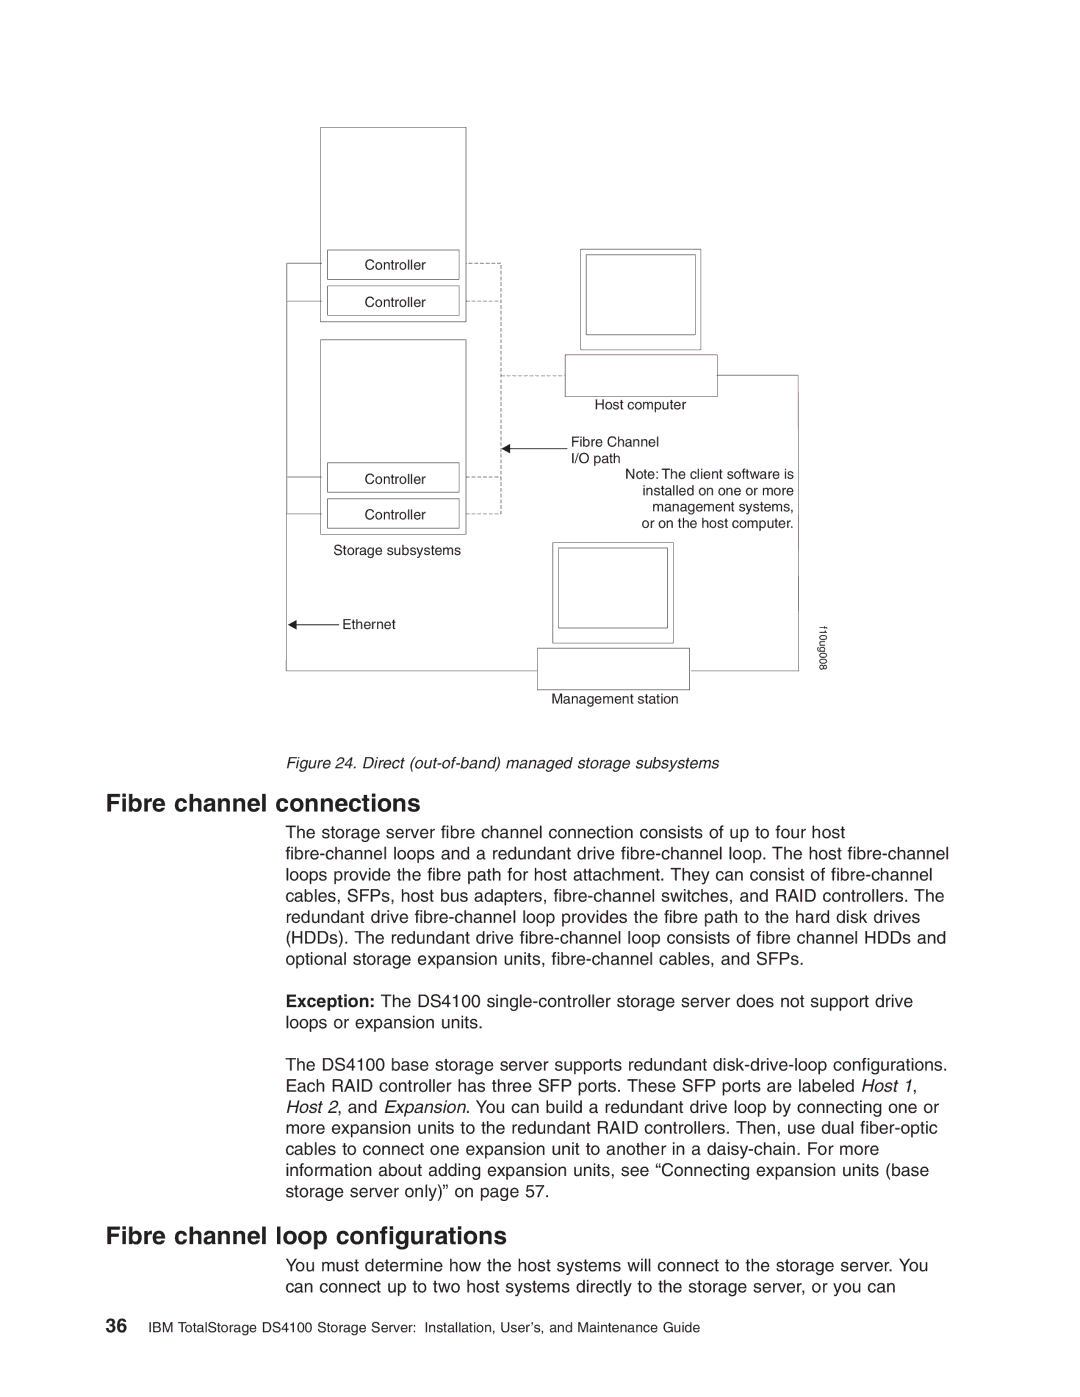 IBM Partner Pavilion DS4100 manual Fibre channel connections, Fibre channel loop configurations 